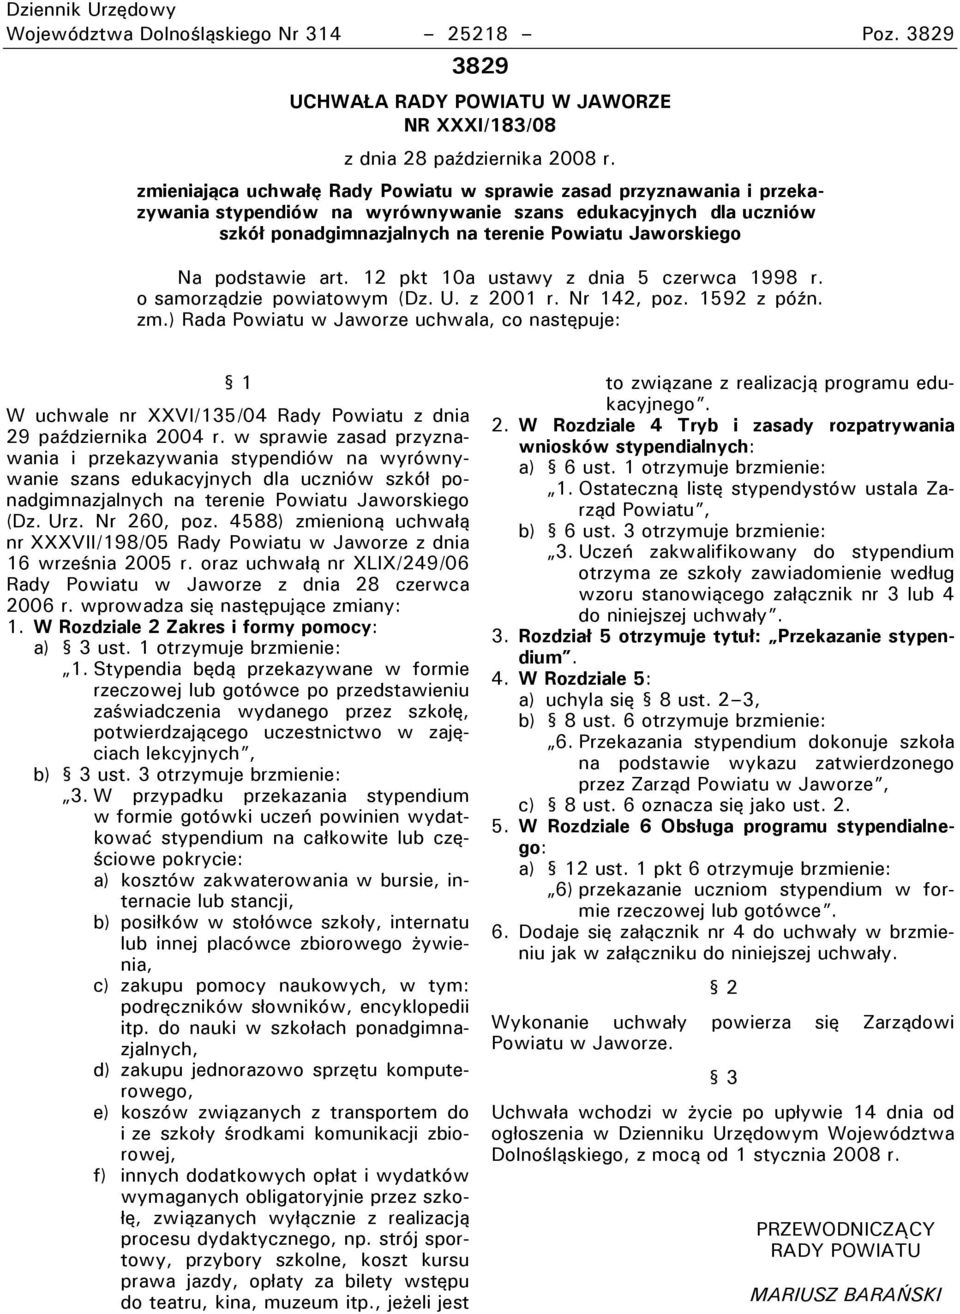 podstawie art. 12 pkt 10a ustawy z dnia 5 czerwca 1998 r. o samorządzie powiatowym (Dz. U. z 2001 r. Nr 1 2, poz. 1592 z późn. zm.